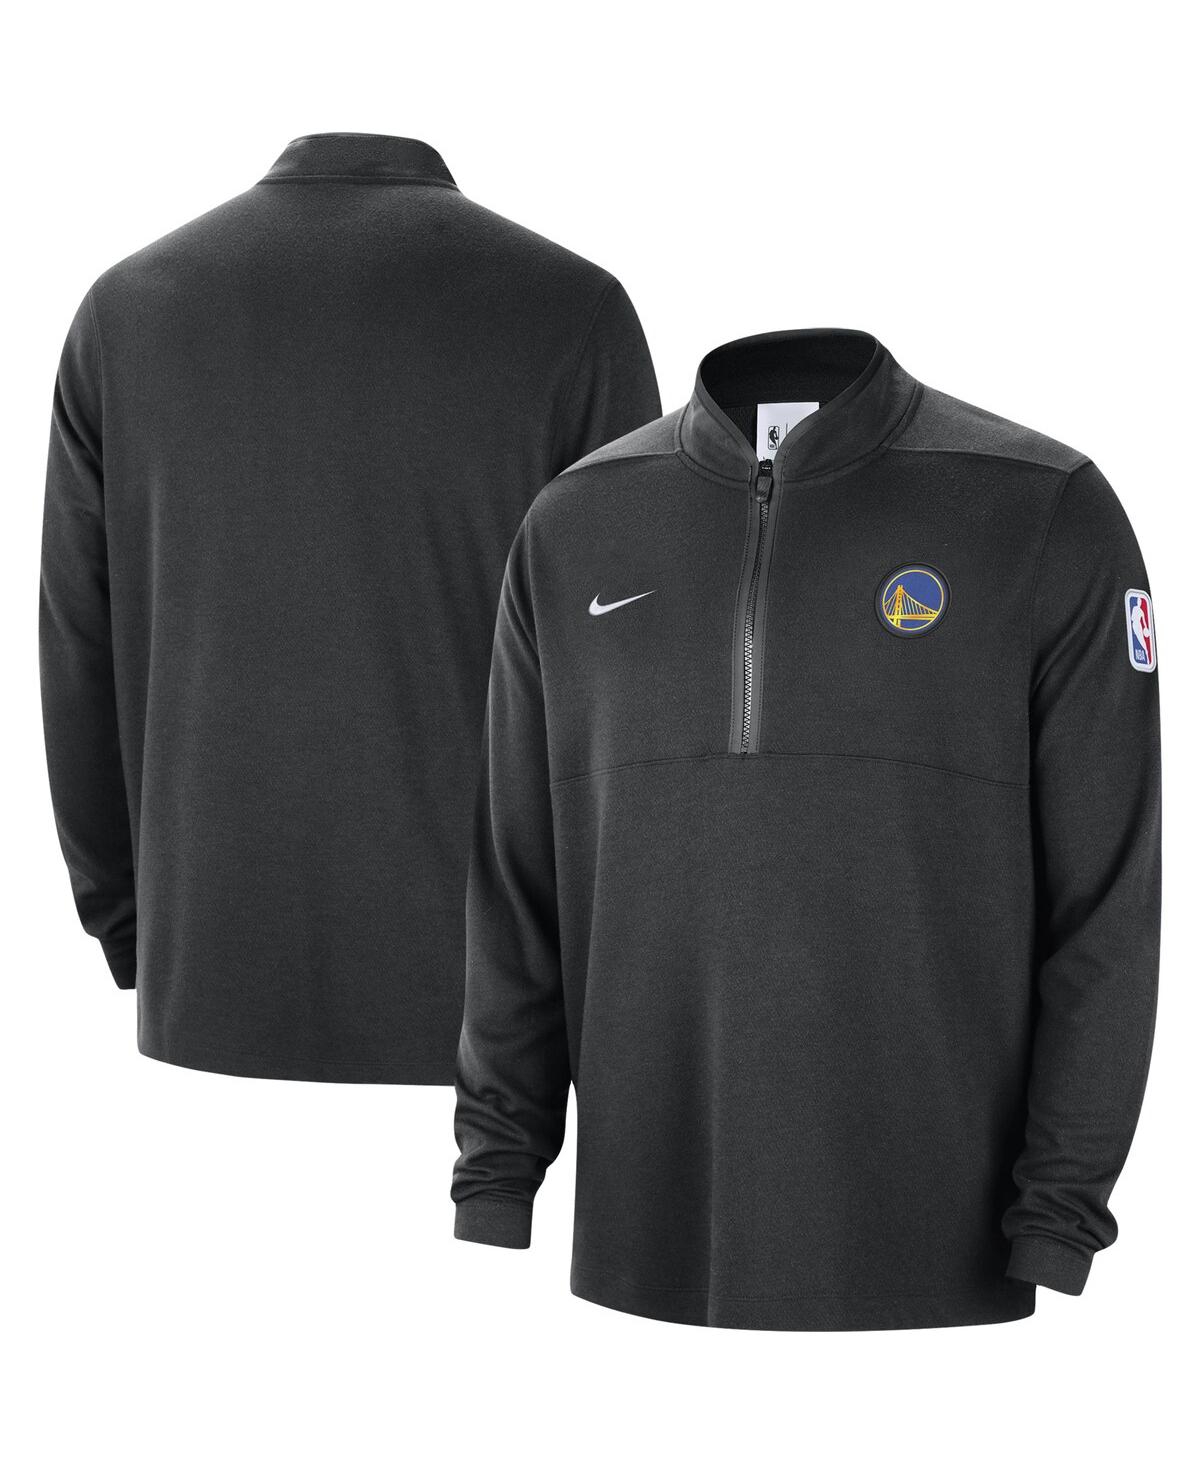 Shop Nike Men's  Black Golden State Warriors Authentic Performance Half-zip Jacket